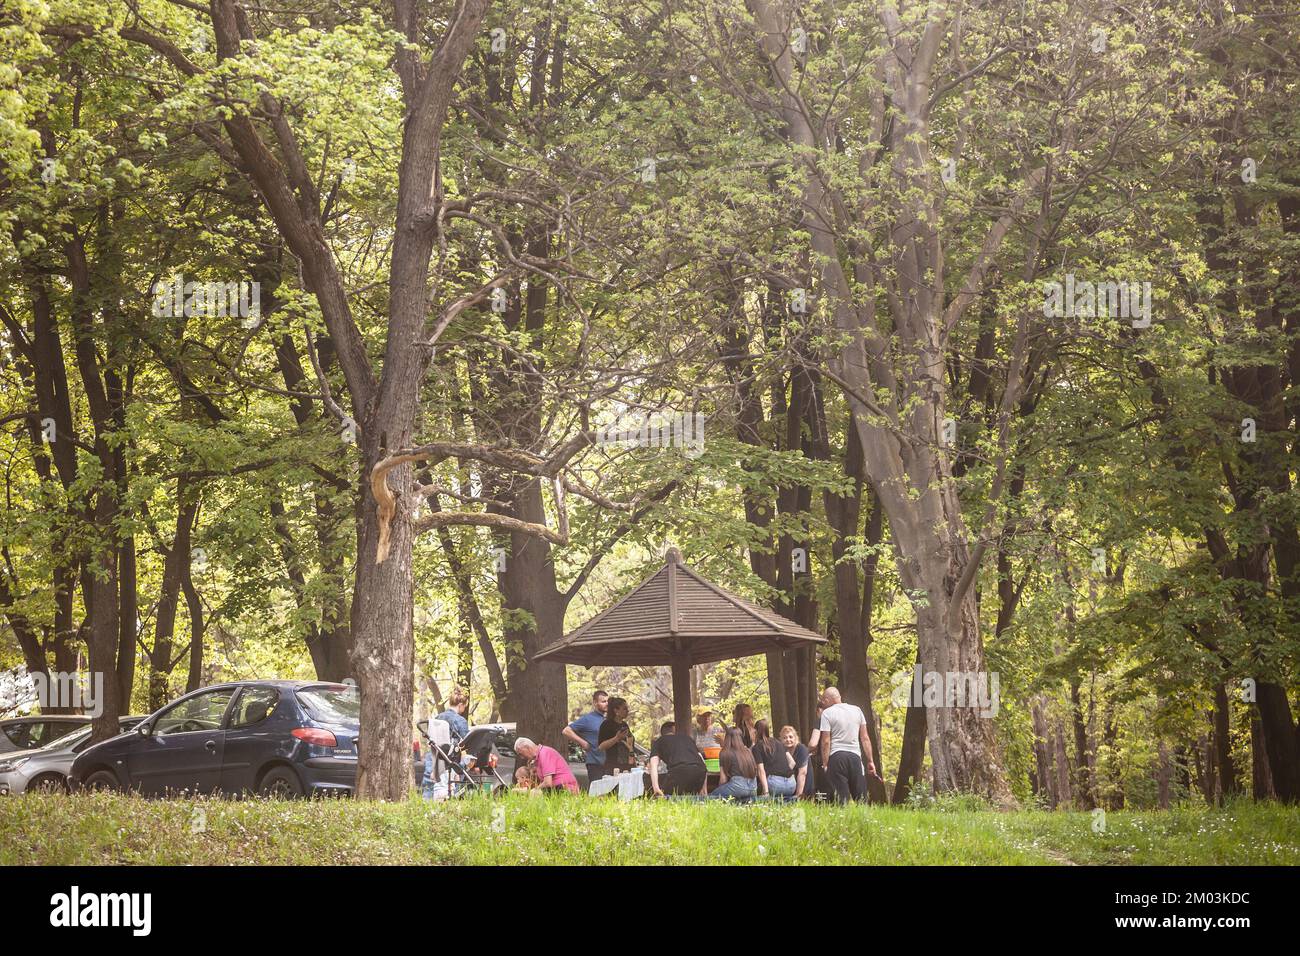 Foto de un grupo de personas, una familia, haciendo un picnic en un parque público de Belgrado, Serbia, el 1st de mayo, día del trabajo. Foto de stock